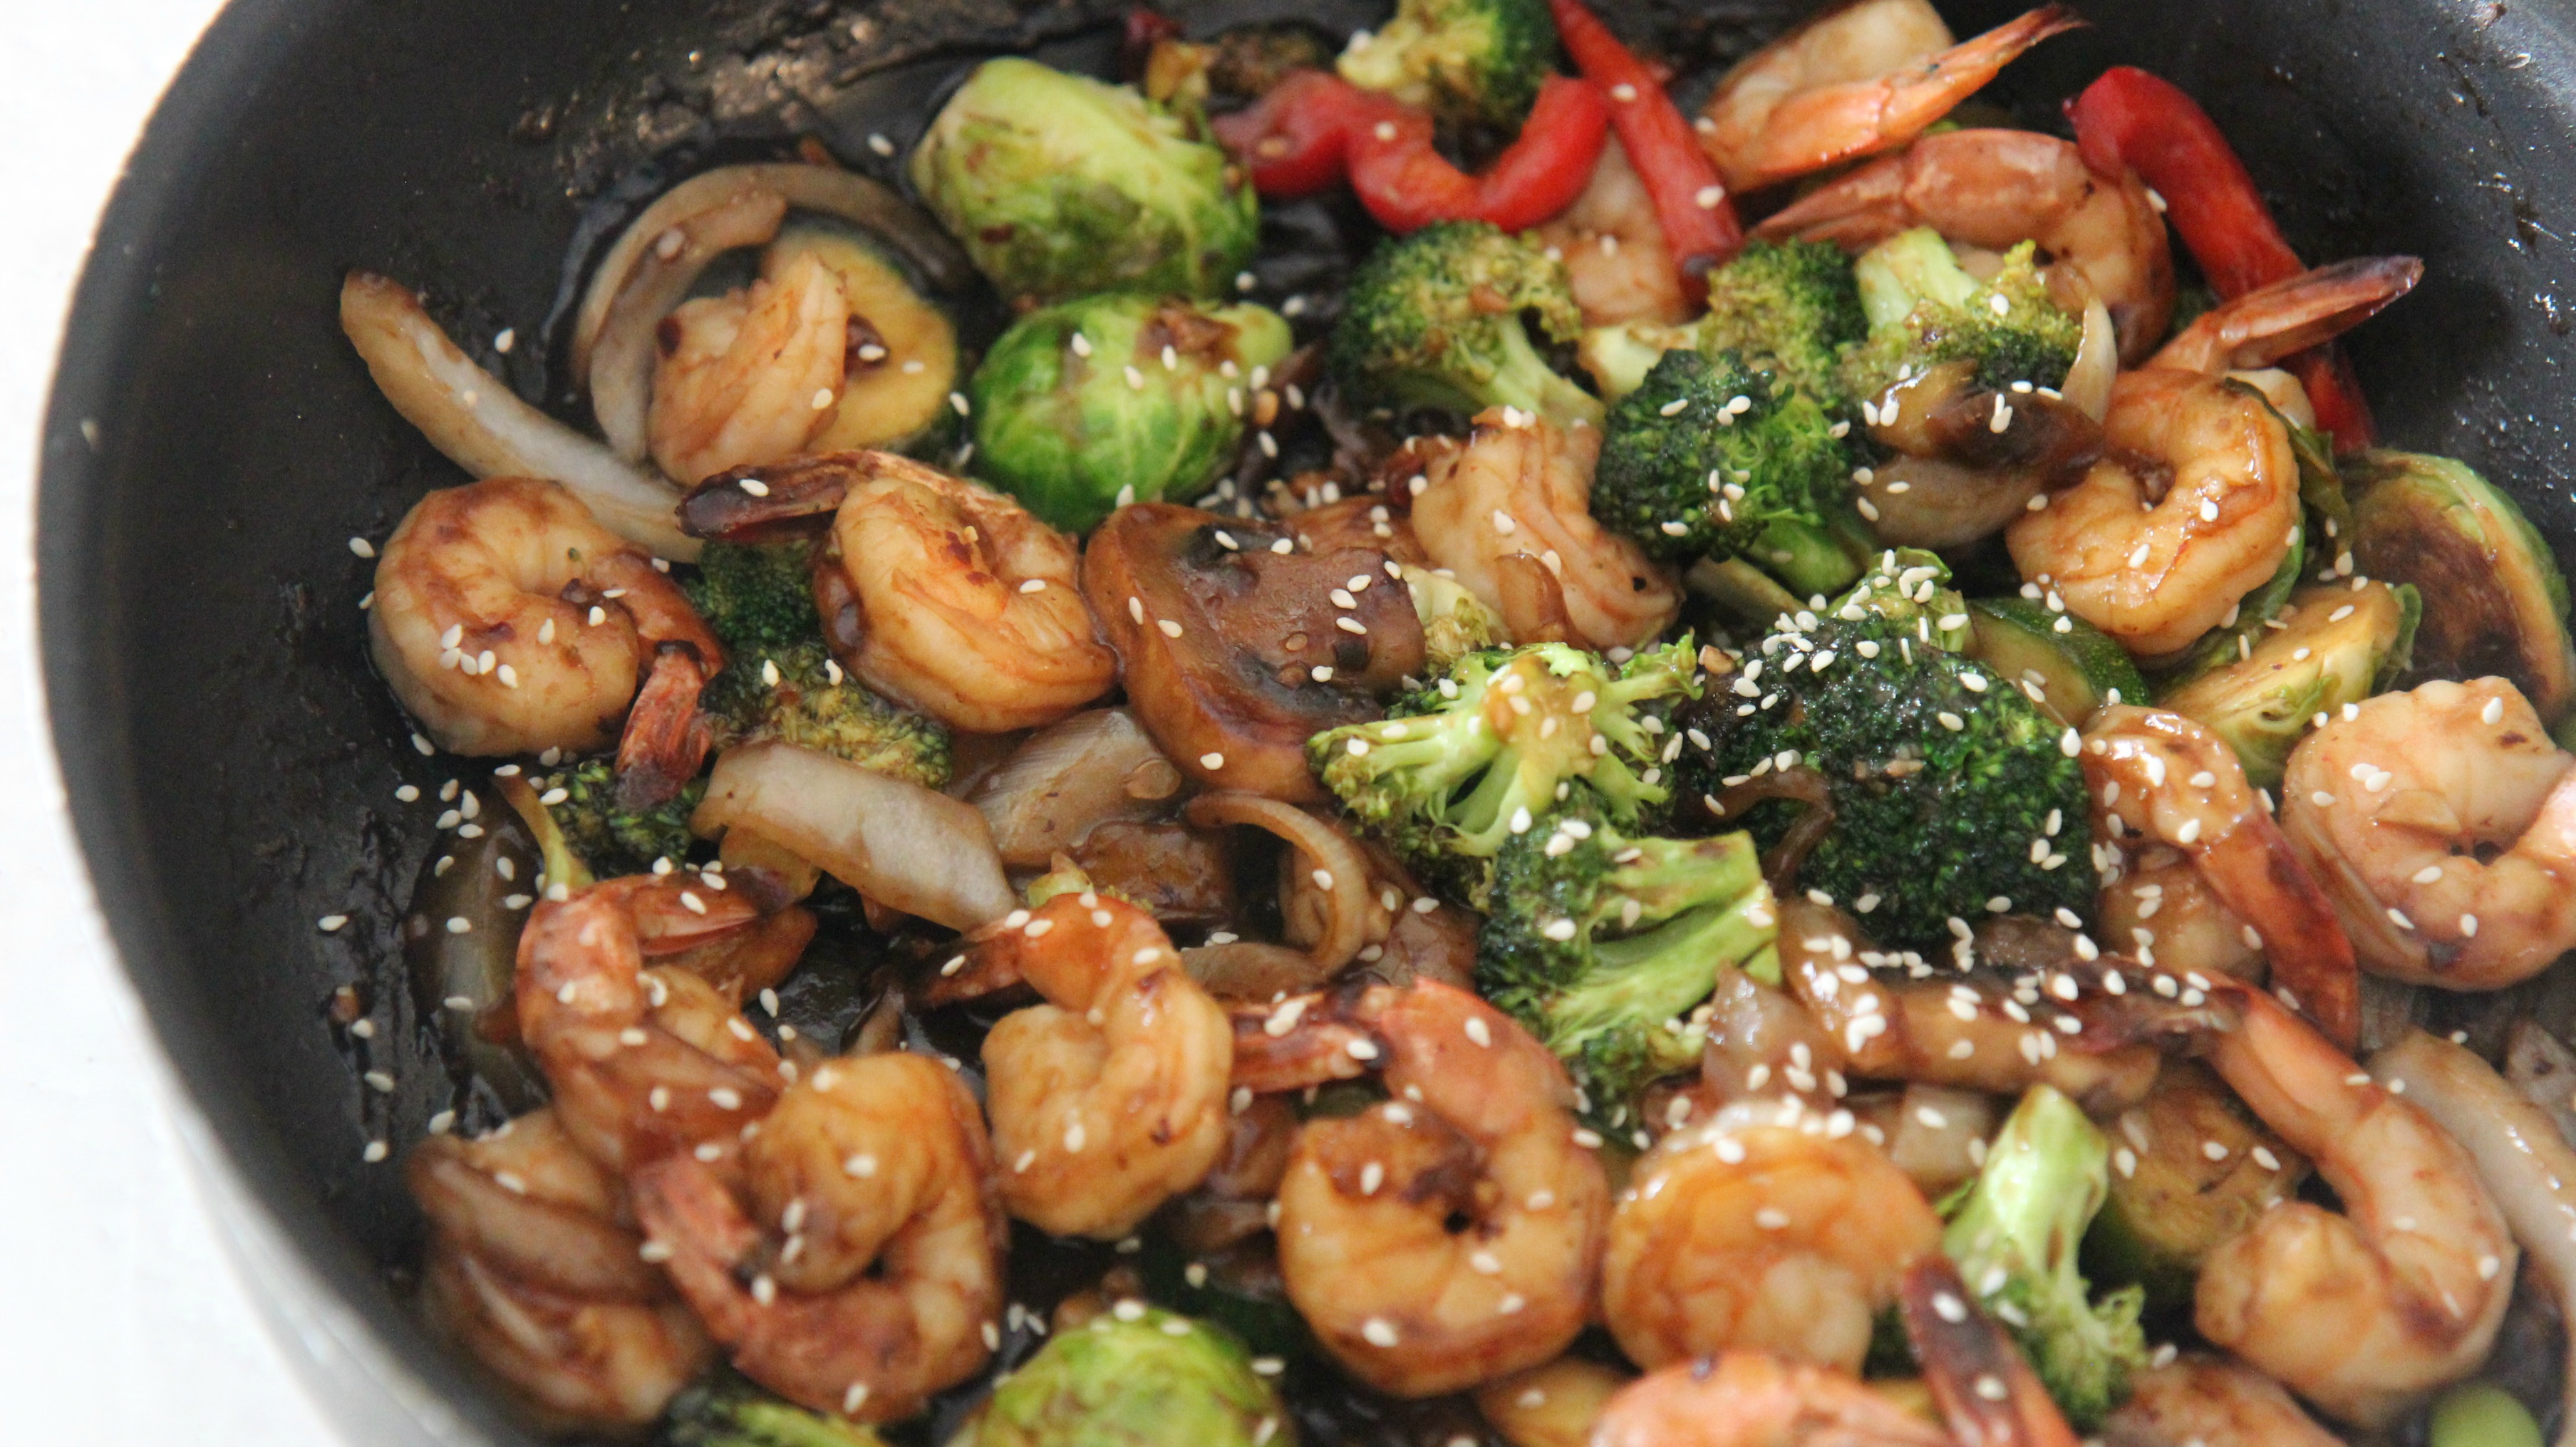 Shrimp and vegetable stir fry in a black skillet. 